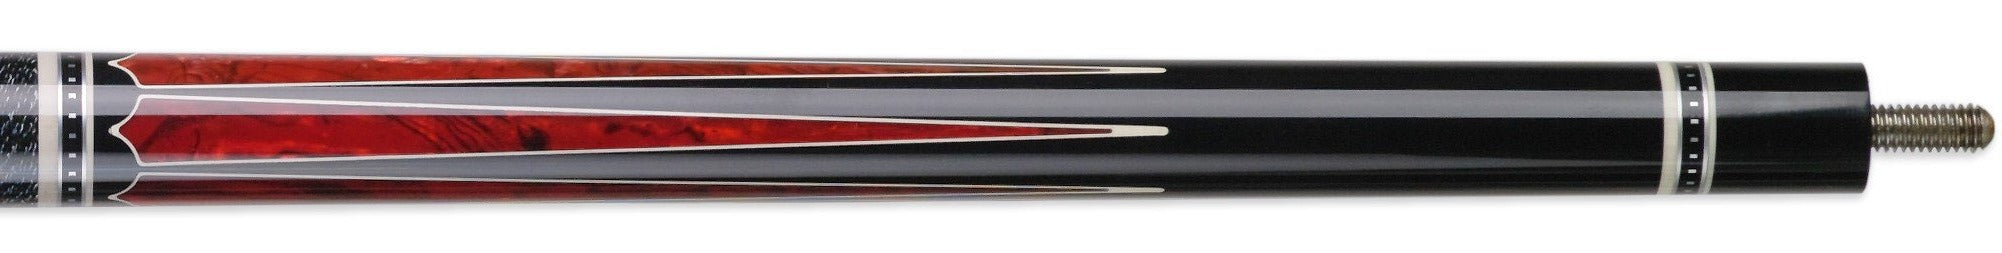 Meucci Ultra Piston-4 - Red Pool Cue cue stick